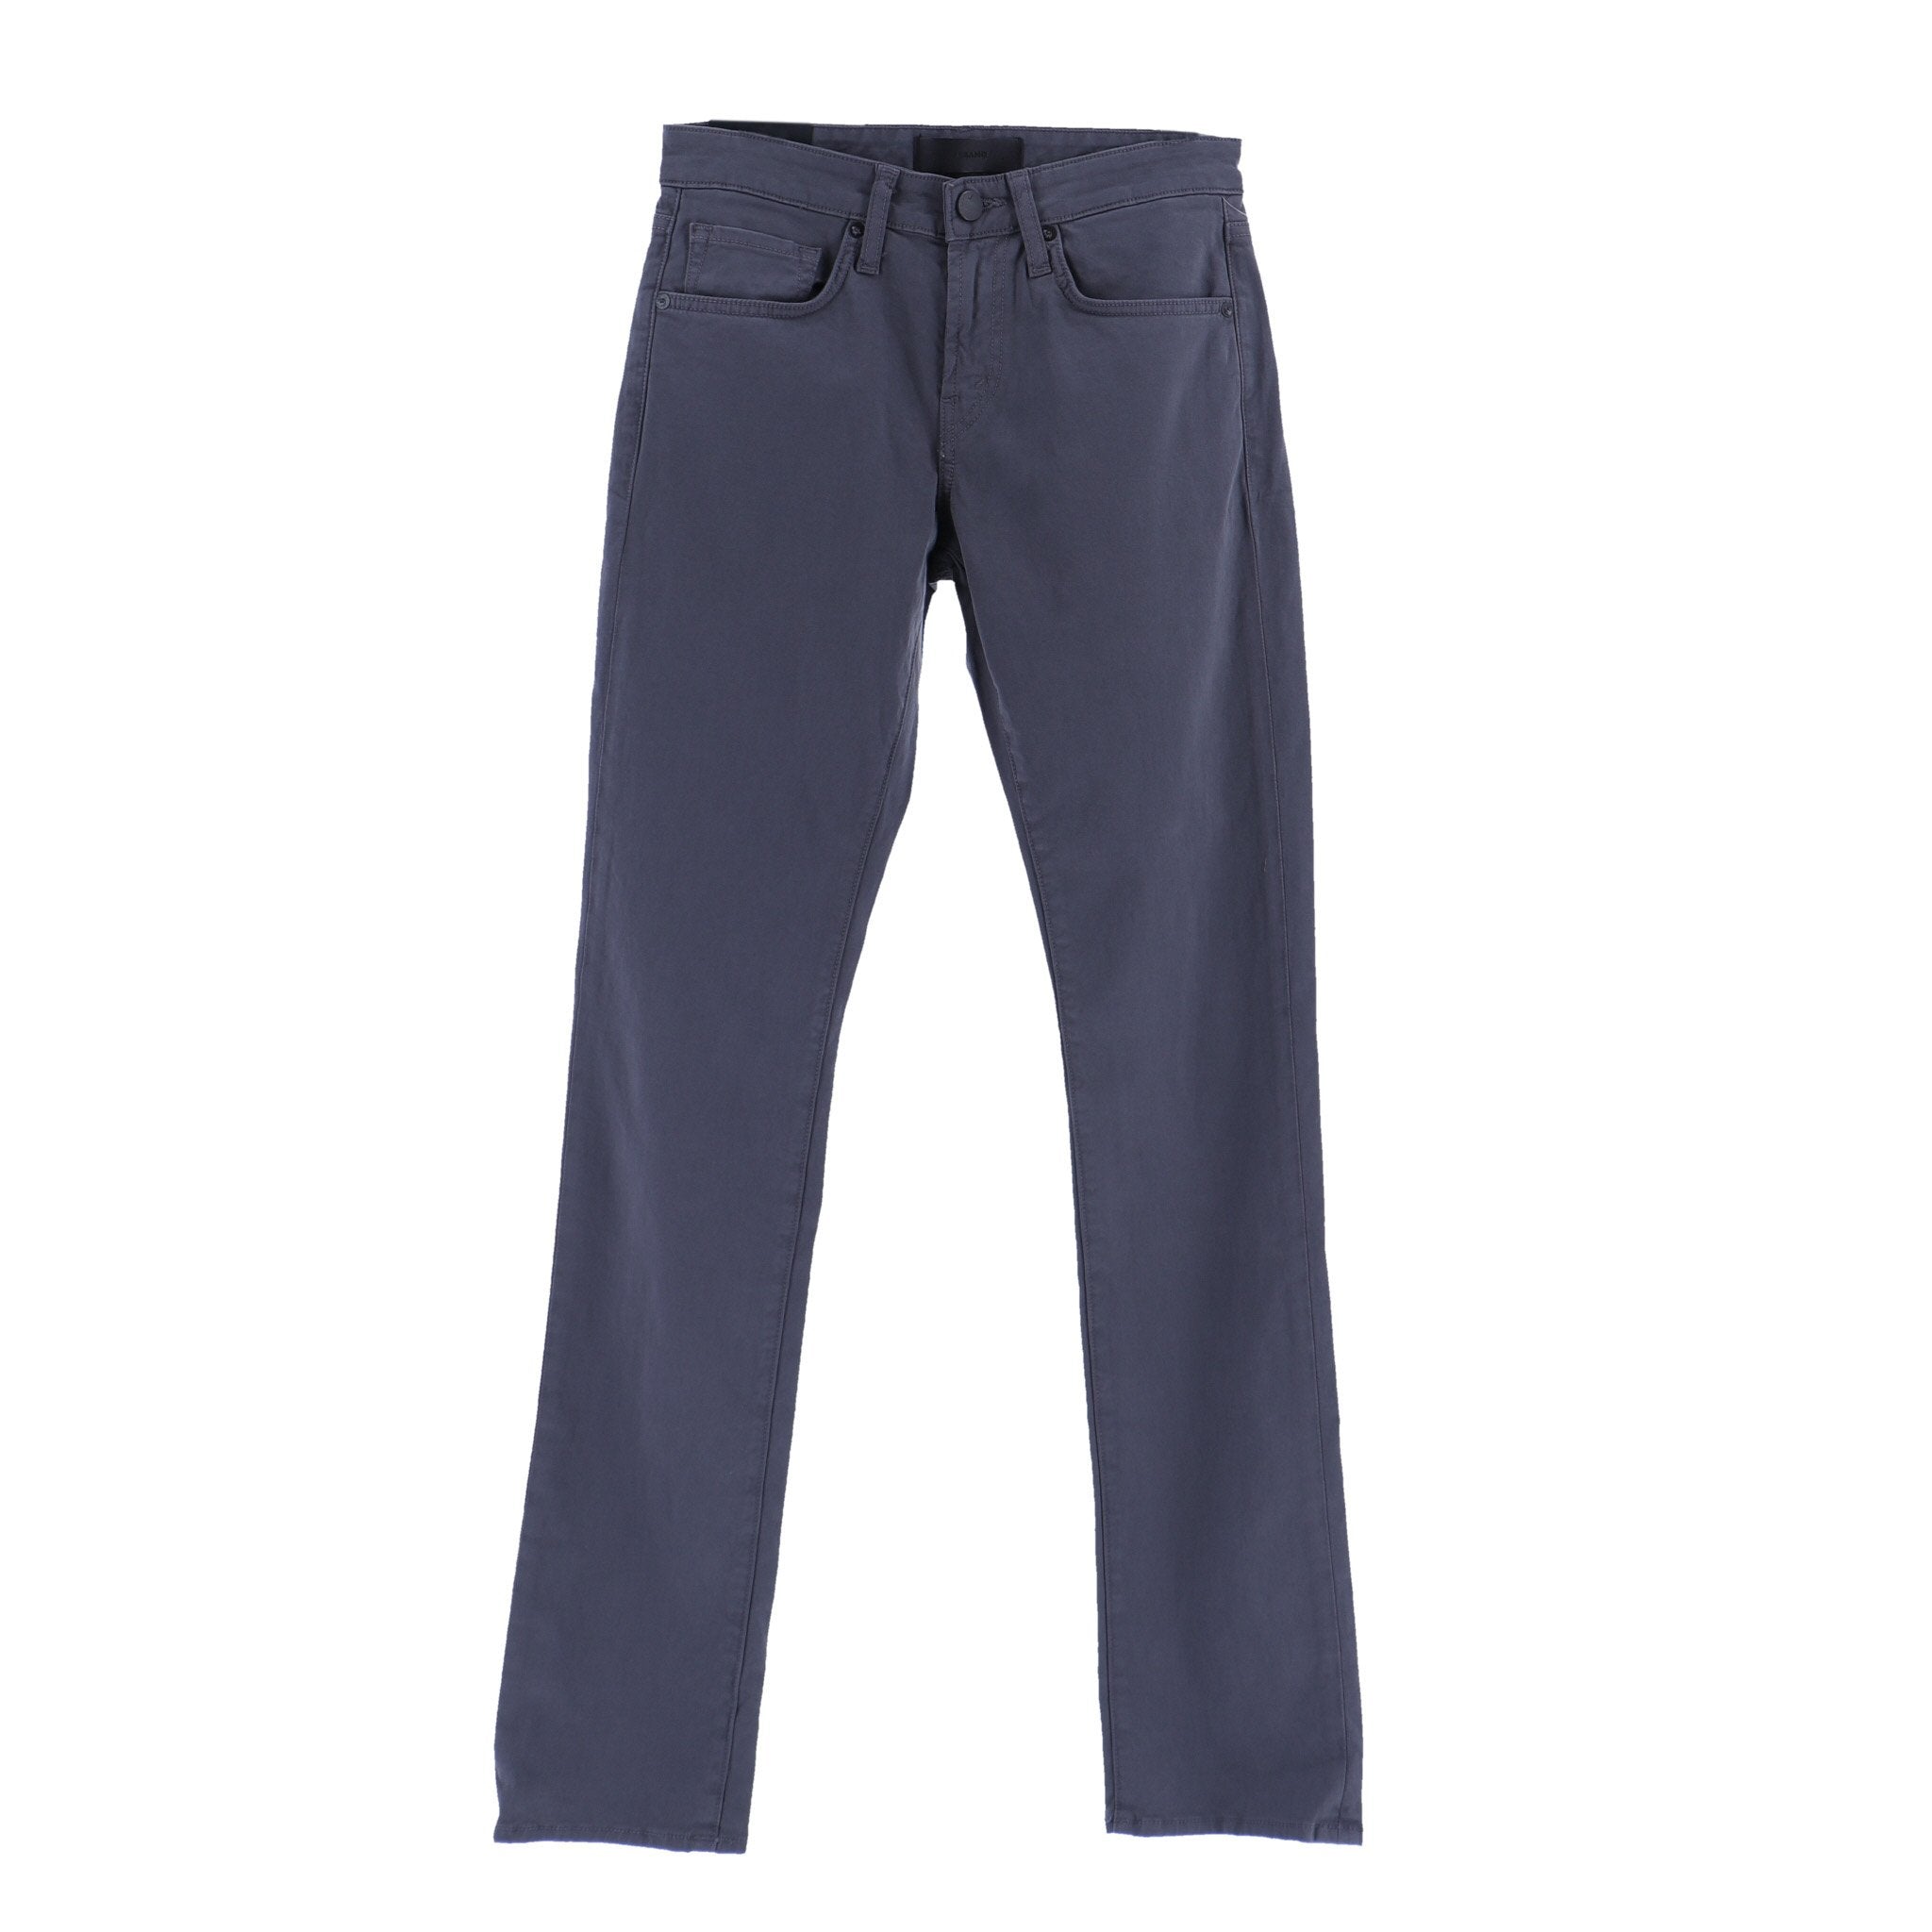 J Brand Men’s Grey Cotton Pants - W28